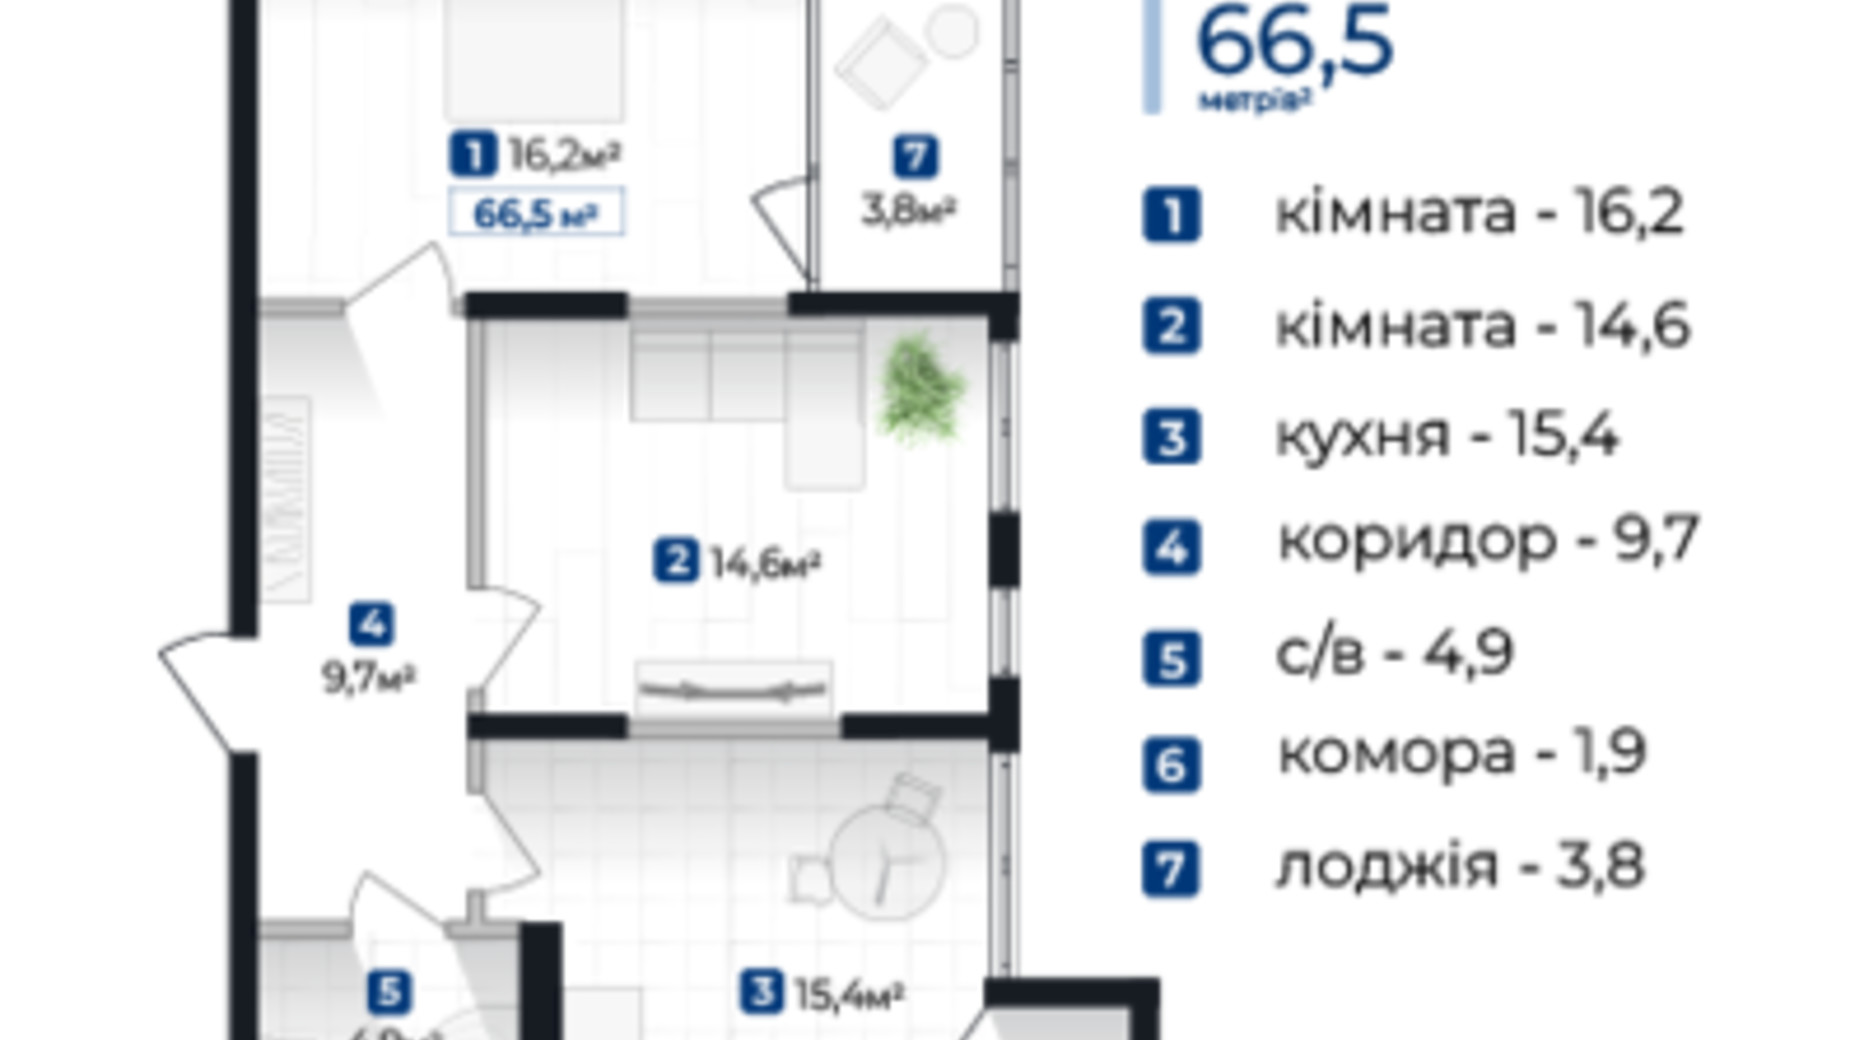 Планировка 2-комнатной квартиры в ЖК Senat 66.5 м², фото 609229